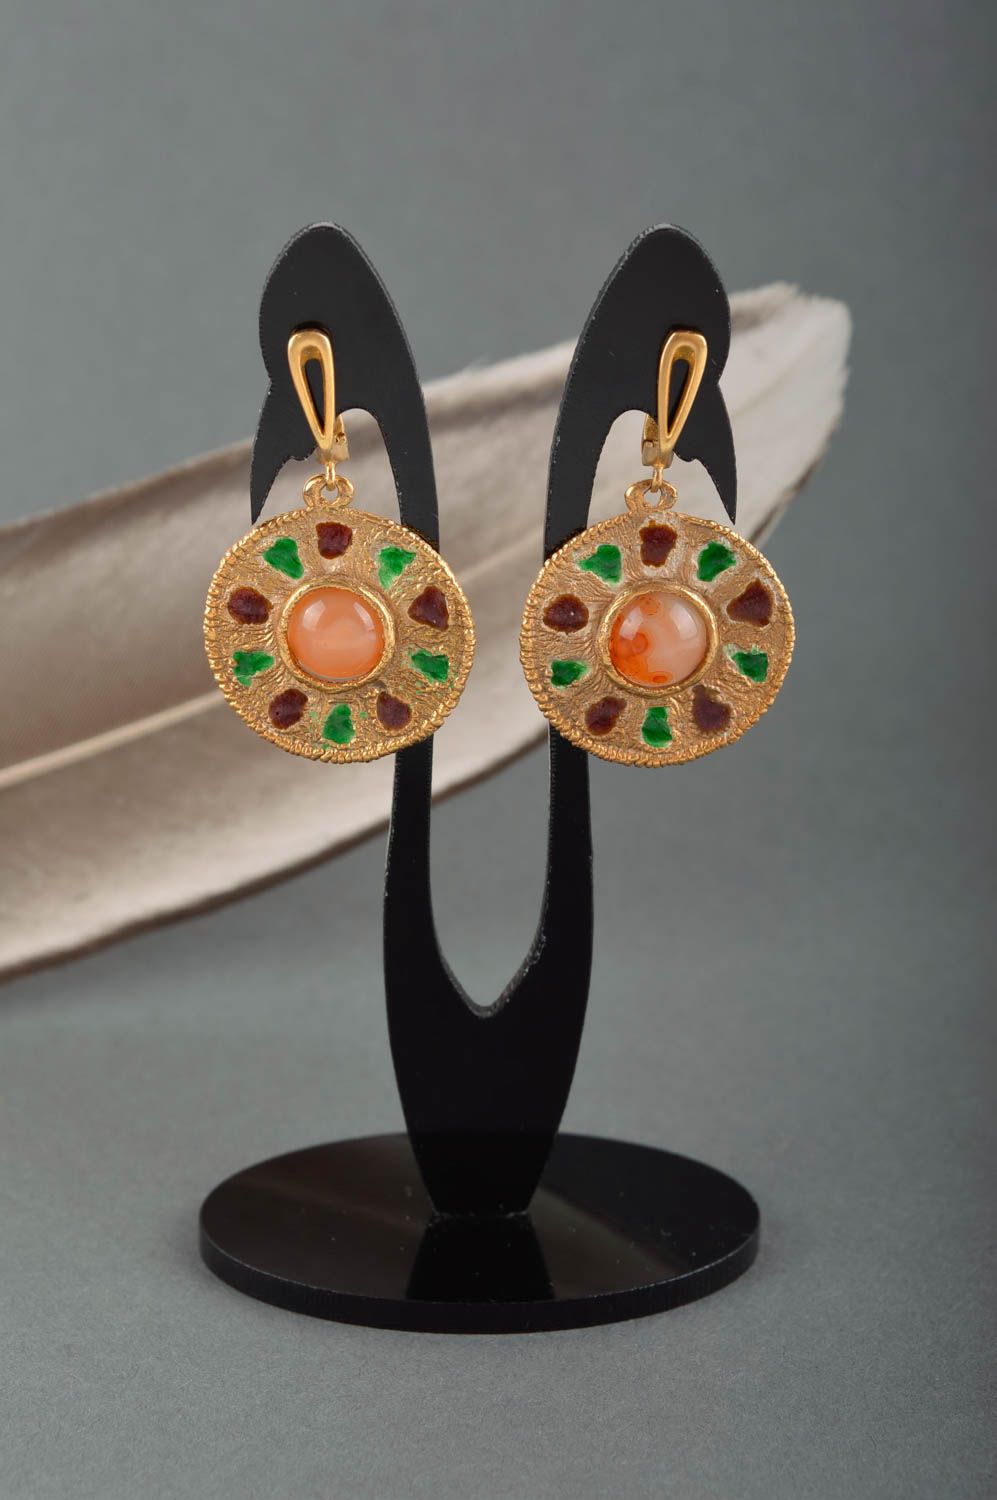 Unusual handmade metal earrings gemstone earrings artisan jewelry designs photo 1